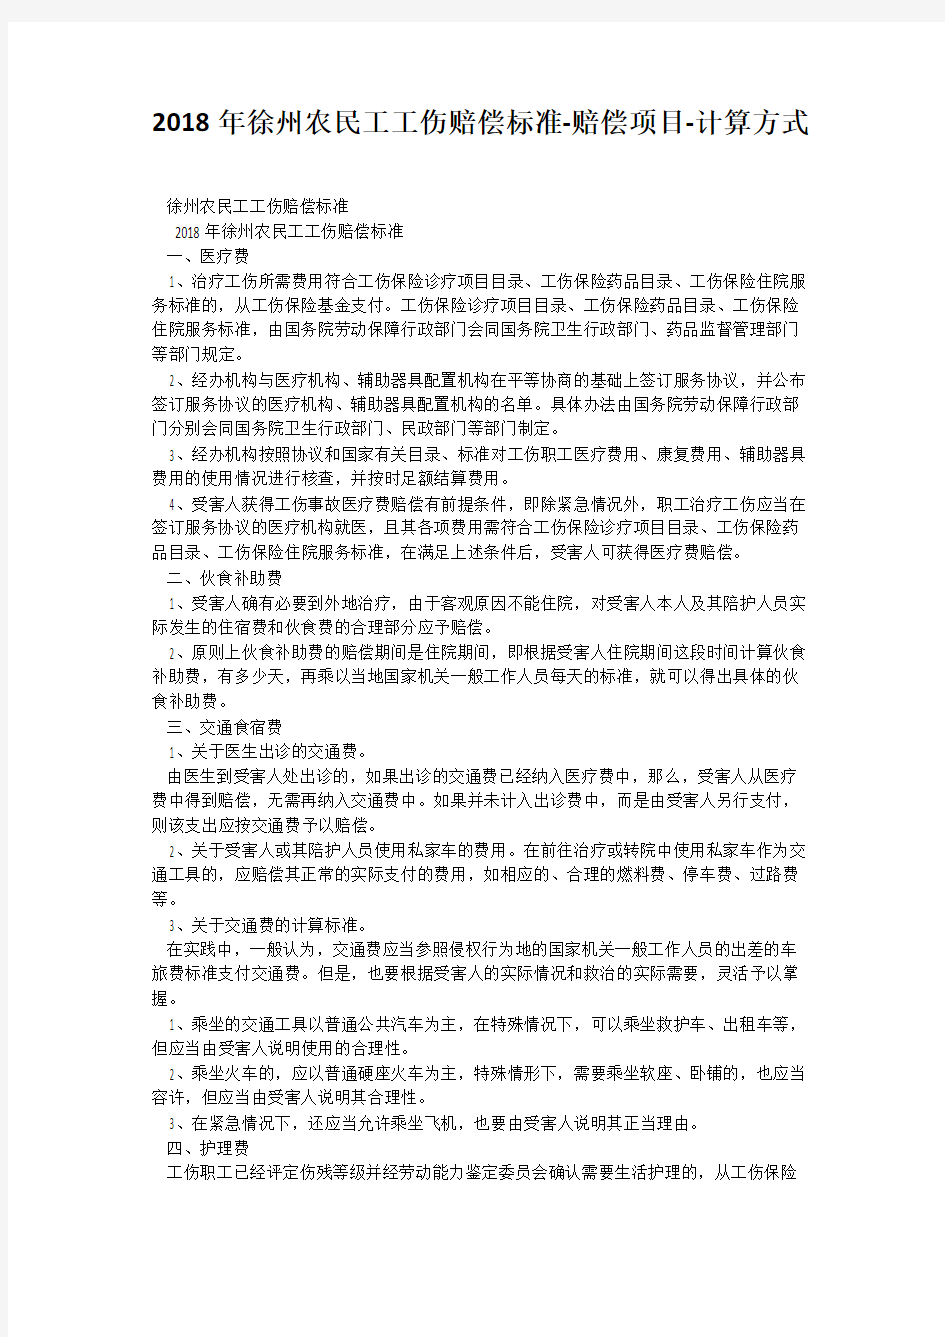 2018年徐州农民工工伤赔偿标准-赔偿项目-计算方式